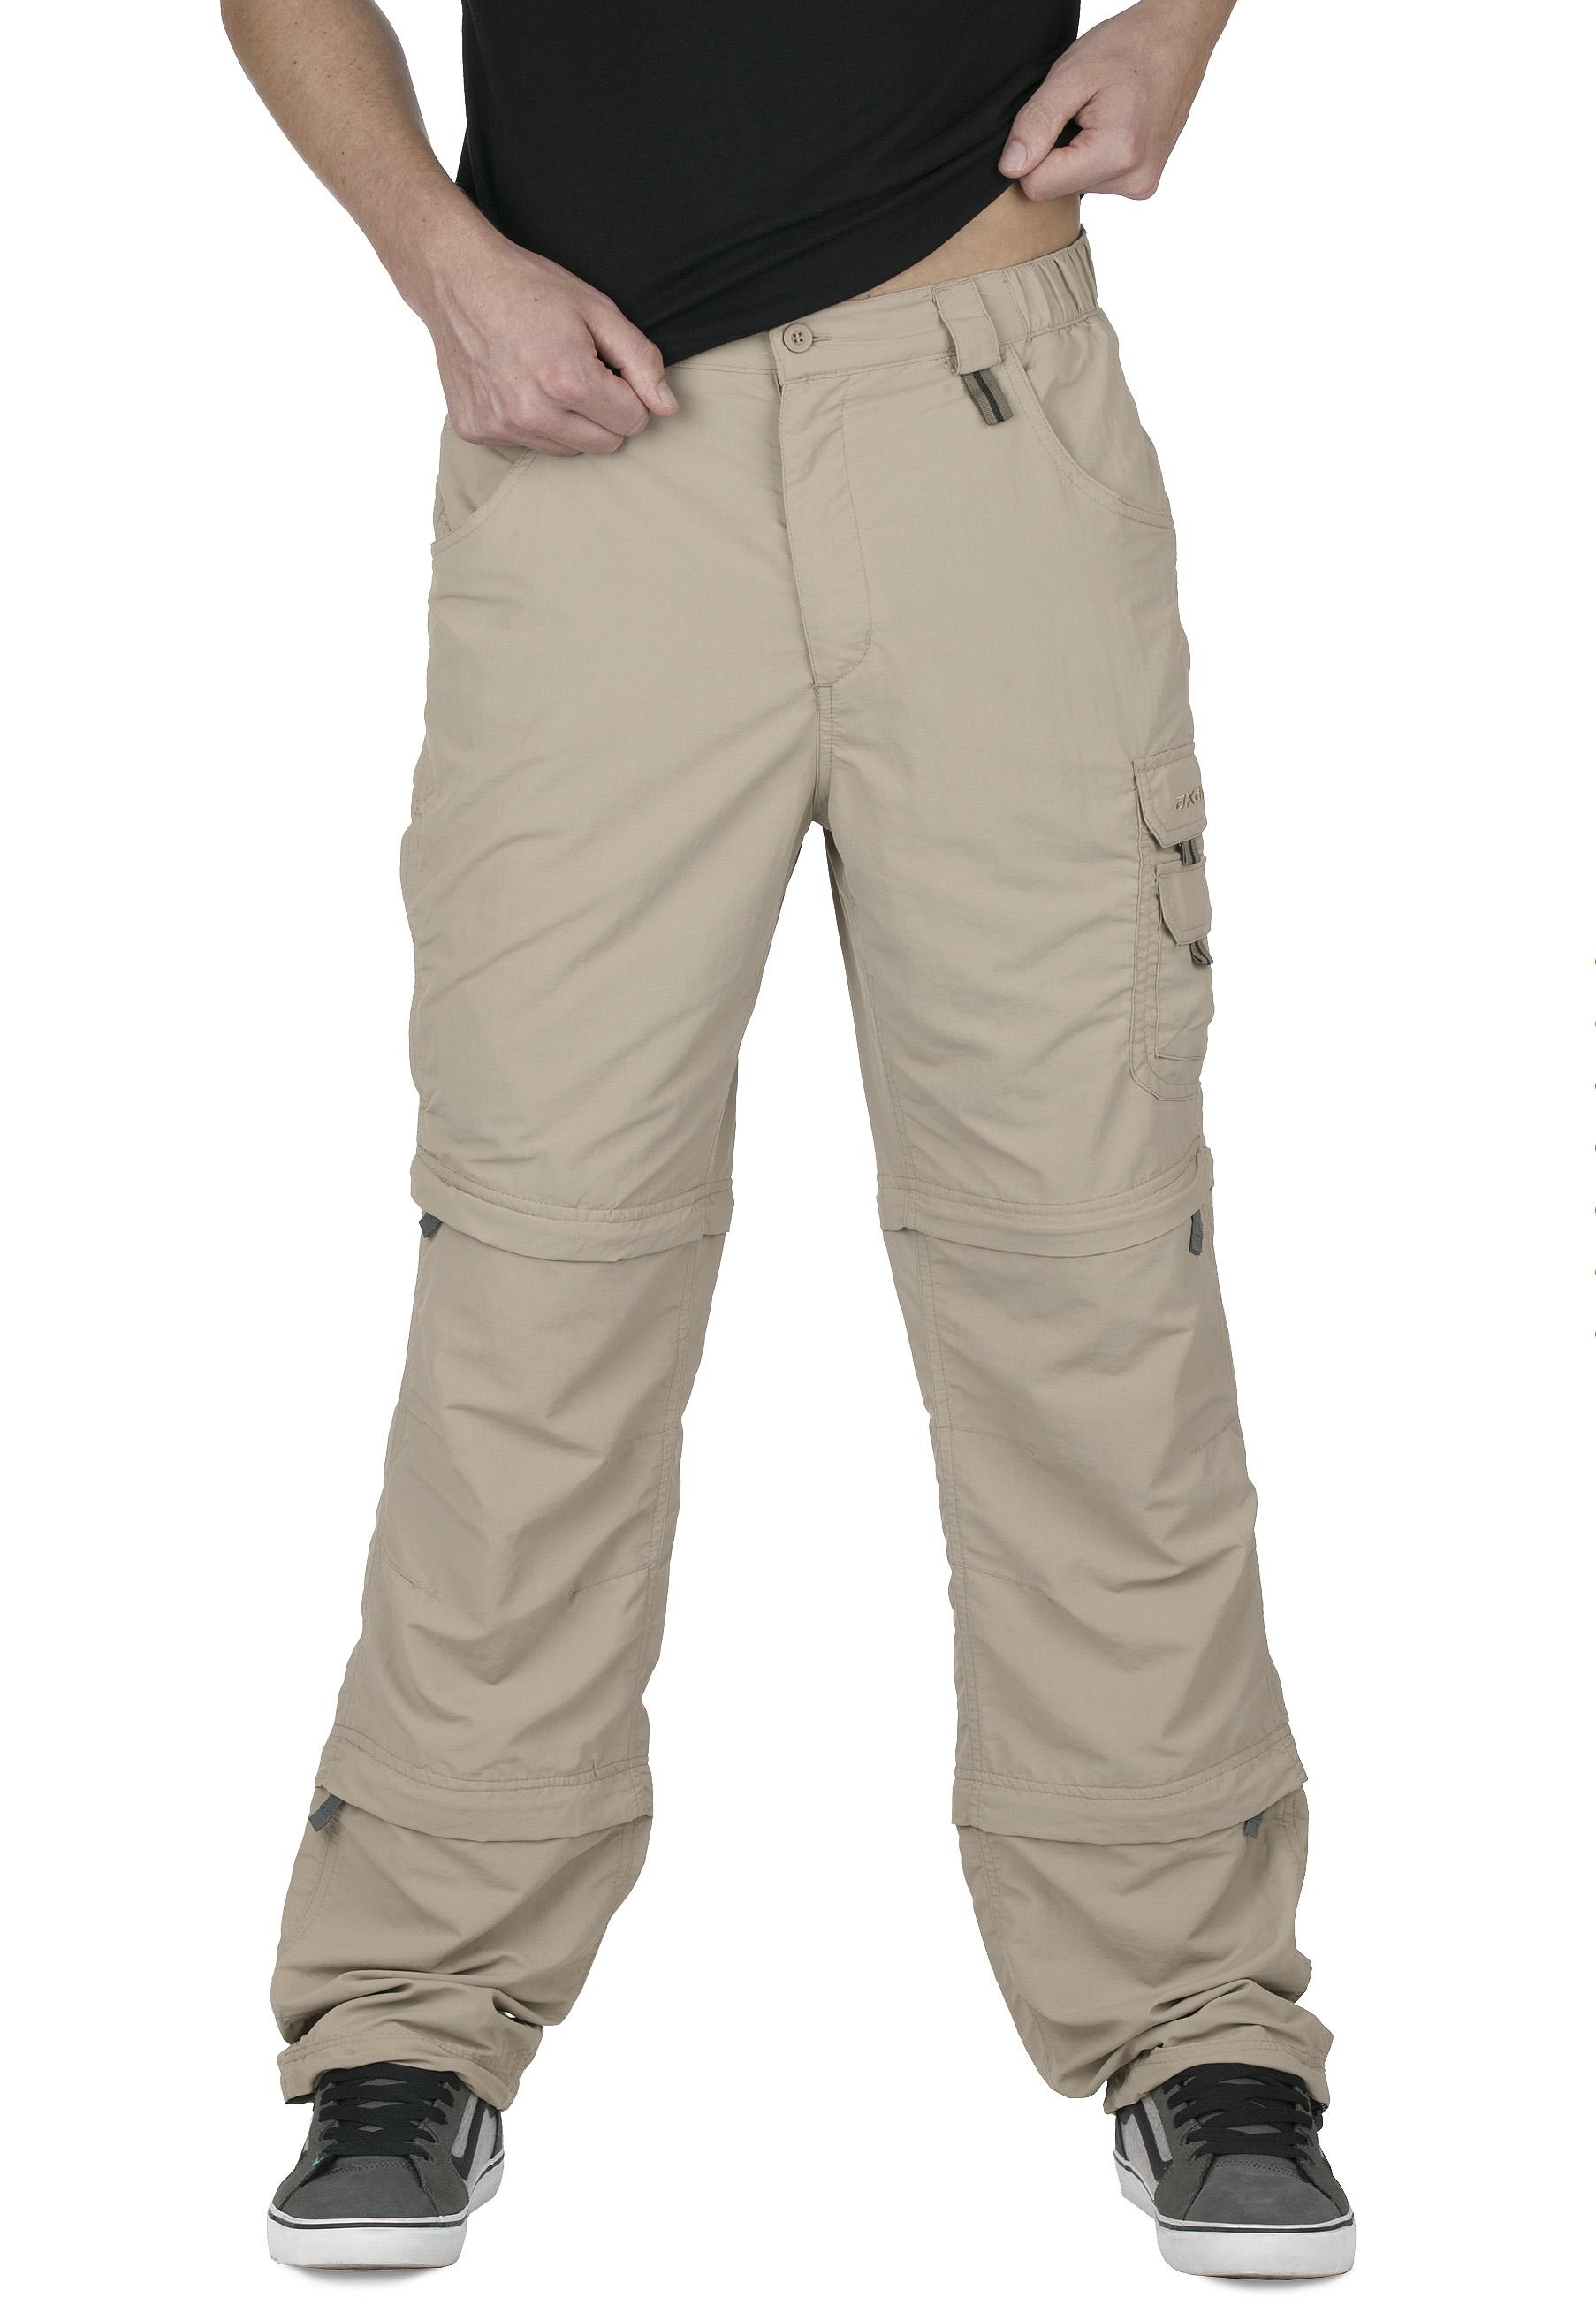 Foto Pantalones desmontables axant Pro Double beige para hombre , xl